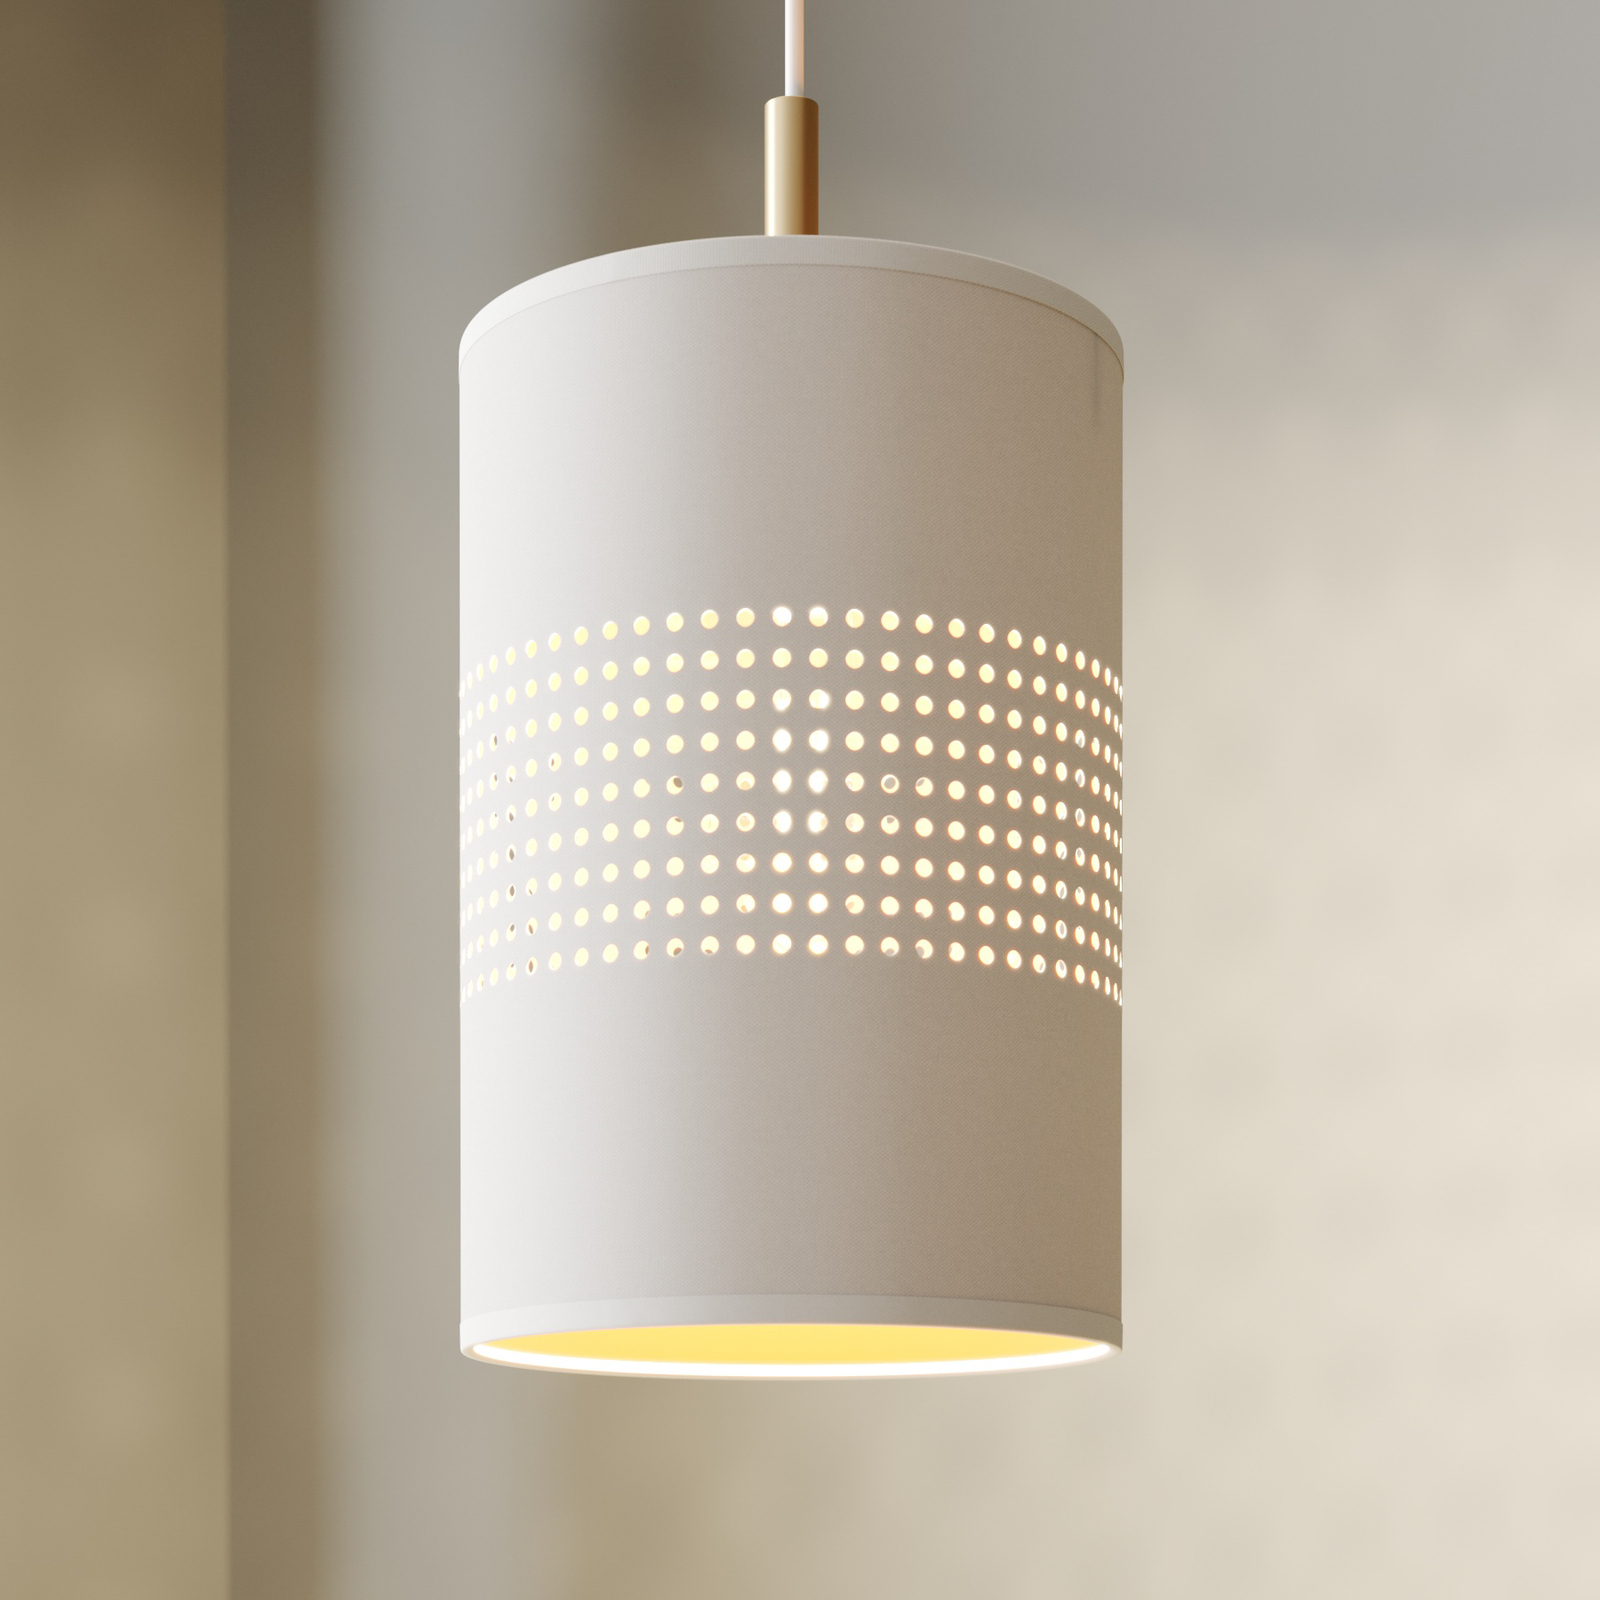 Bogart hængelampe, 1 lyskilde, hvid/guld